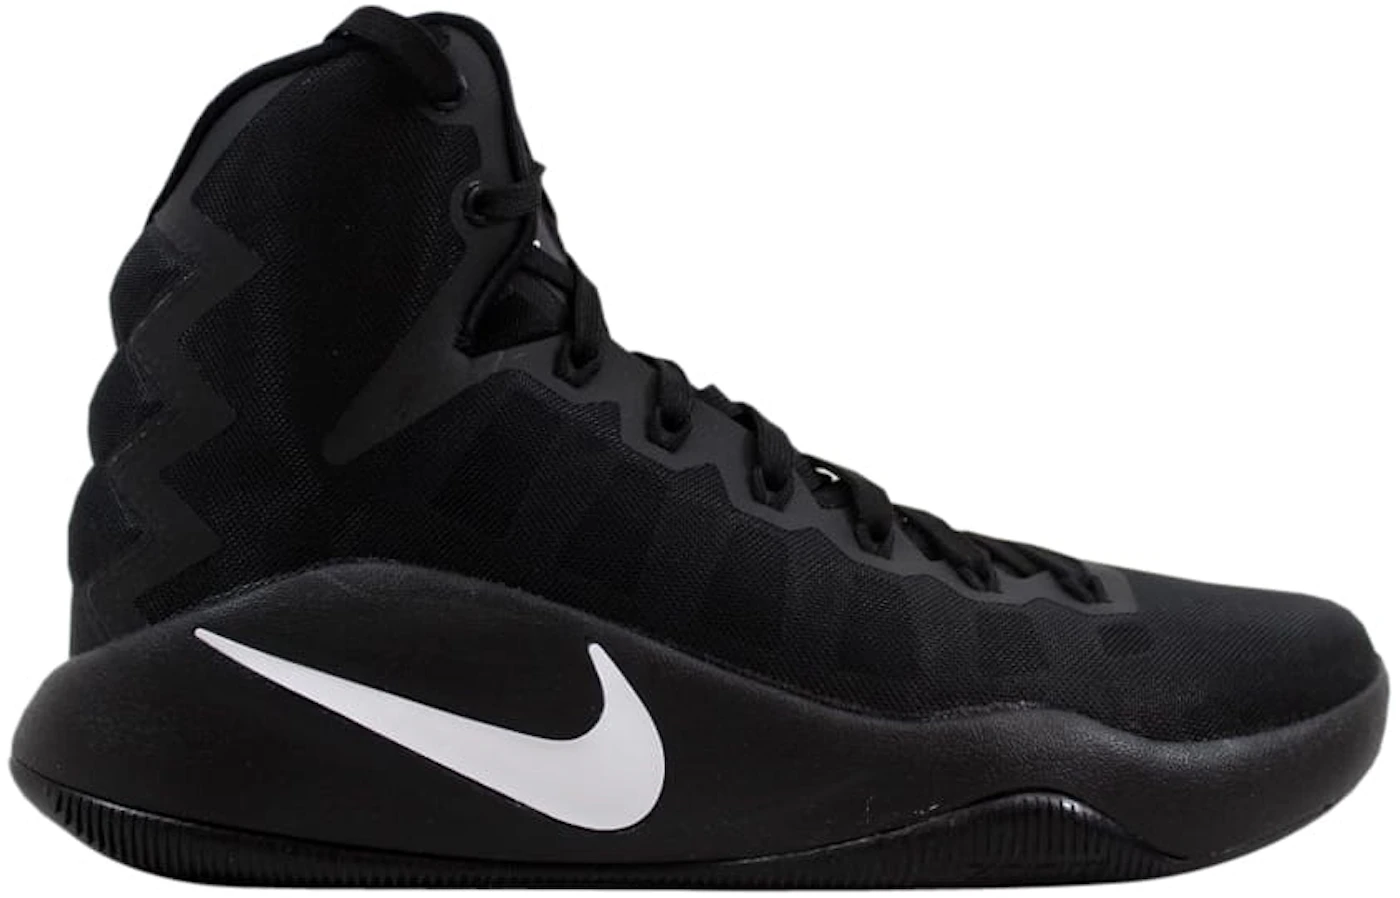 Nike Hyperdunk 2016 Flyknit Basketball Shoes Black/White 843390-010 Size 10